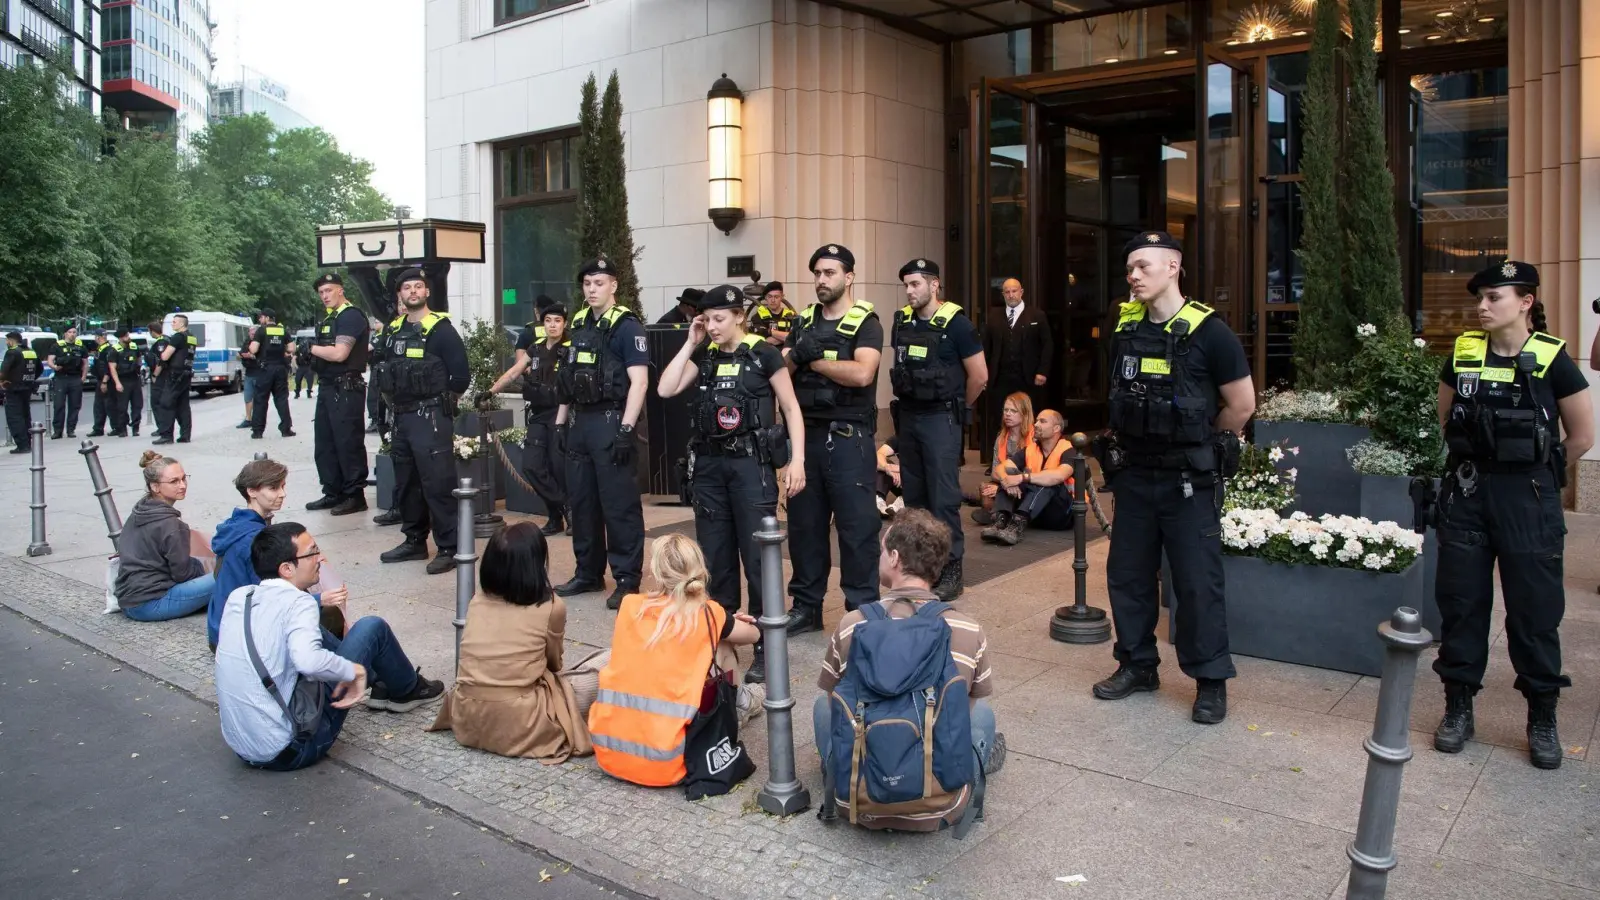 Polizeieinsatz am Haupteingang des Hotels Ritz-Carlton in Berlin, wo eine Protestaktion von Klima-Demonstranten stattfindet. (Foto: Paul Zinken/dpa)